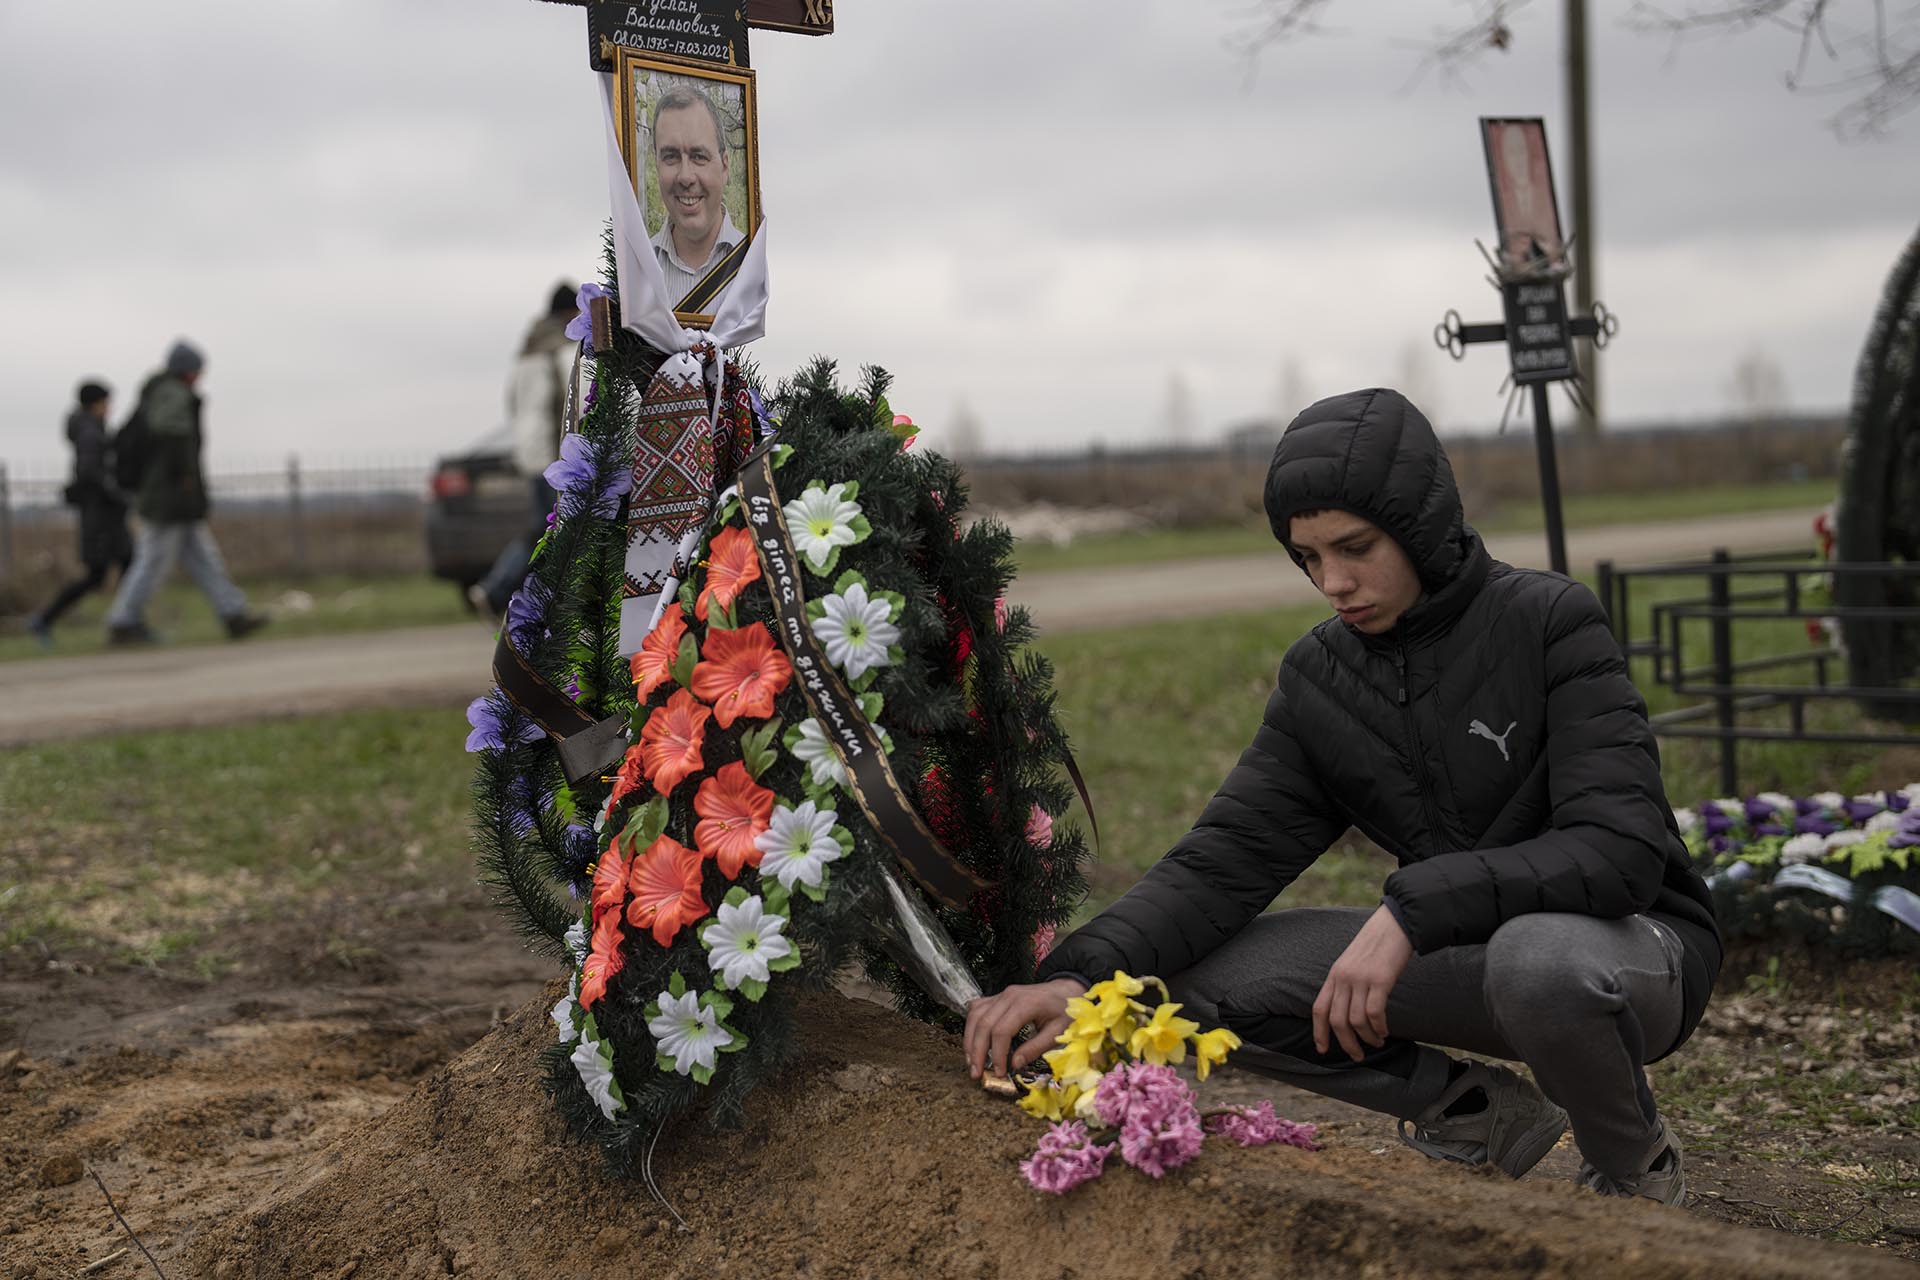 Yura Nechyporenko coloca una chocolatina en la tumba de su padre, Ruslan Nechyporenko, en el cementerio de Bucha, a las afueras de Kiev, Ucrania. El joven sobrevivió a un intento de ejecución de soldados rusos, mientras que su padre murió, y ahora la familia pide justicia. (AP Foto/Petros Giannakouris)